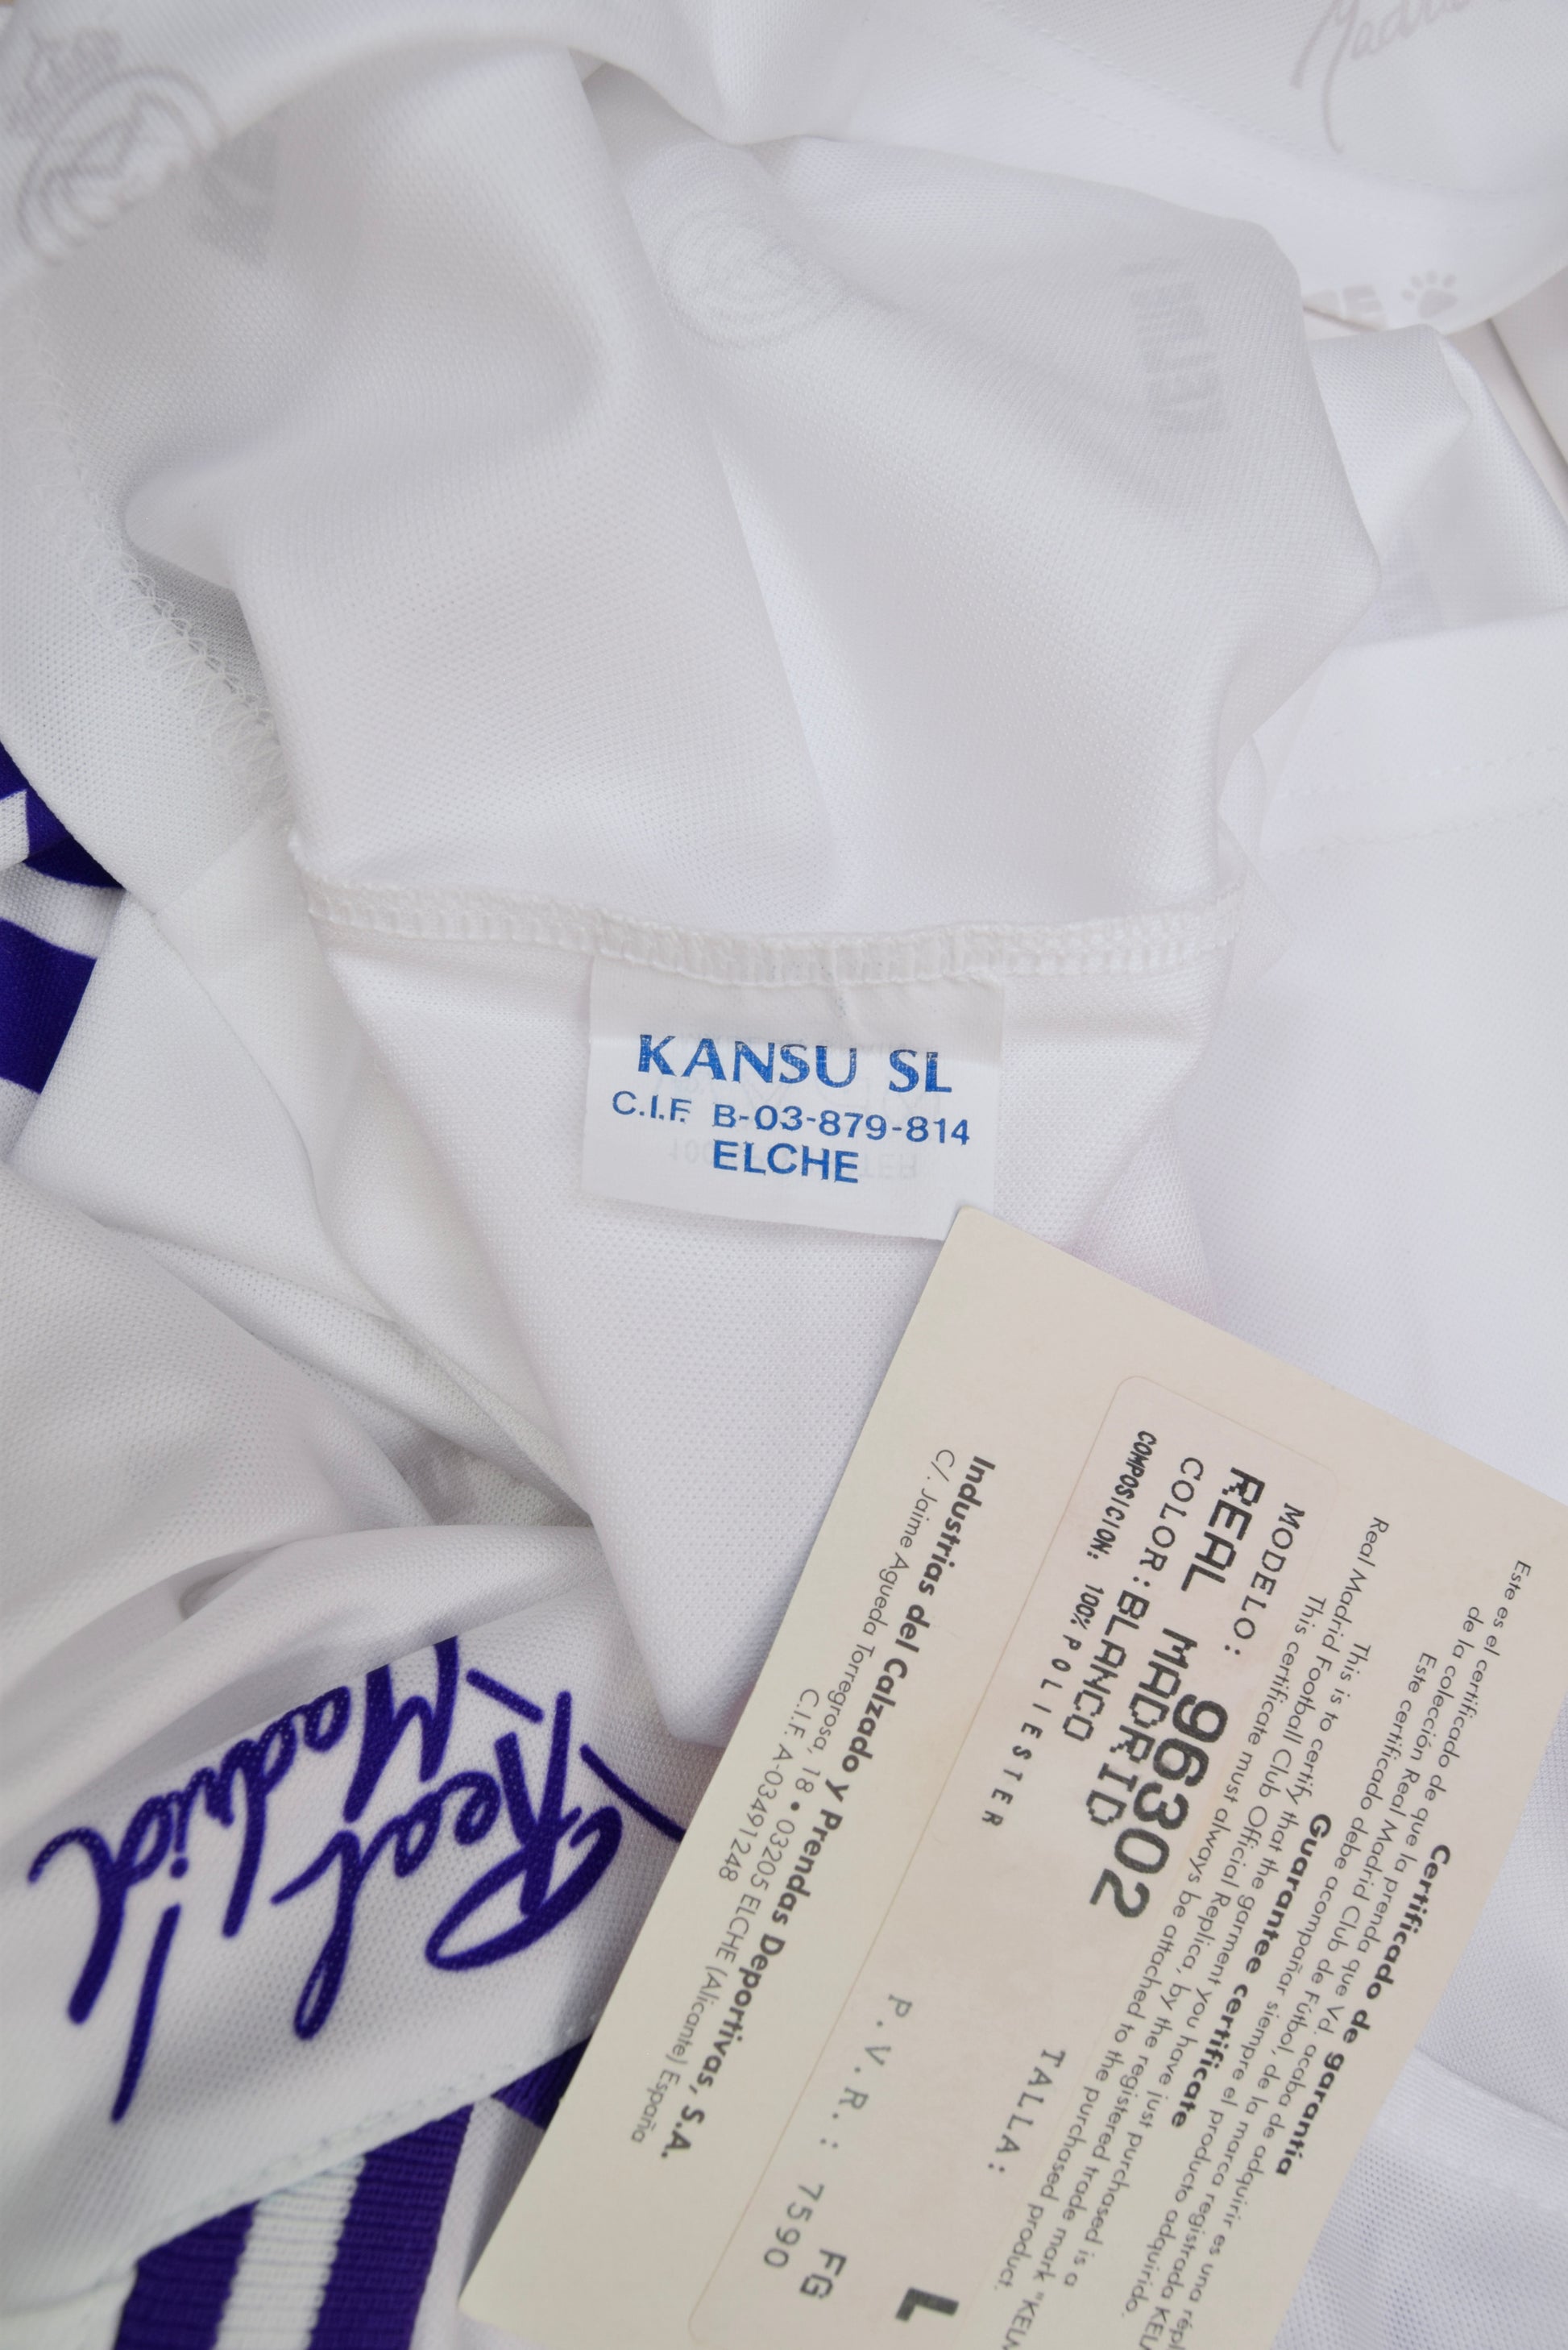 Vintage Real Madrid Kelme Home Football Shirt 1994 - 1995 Home White Teka BNWT NOS OG DS New Size L